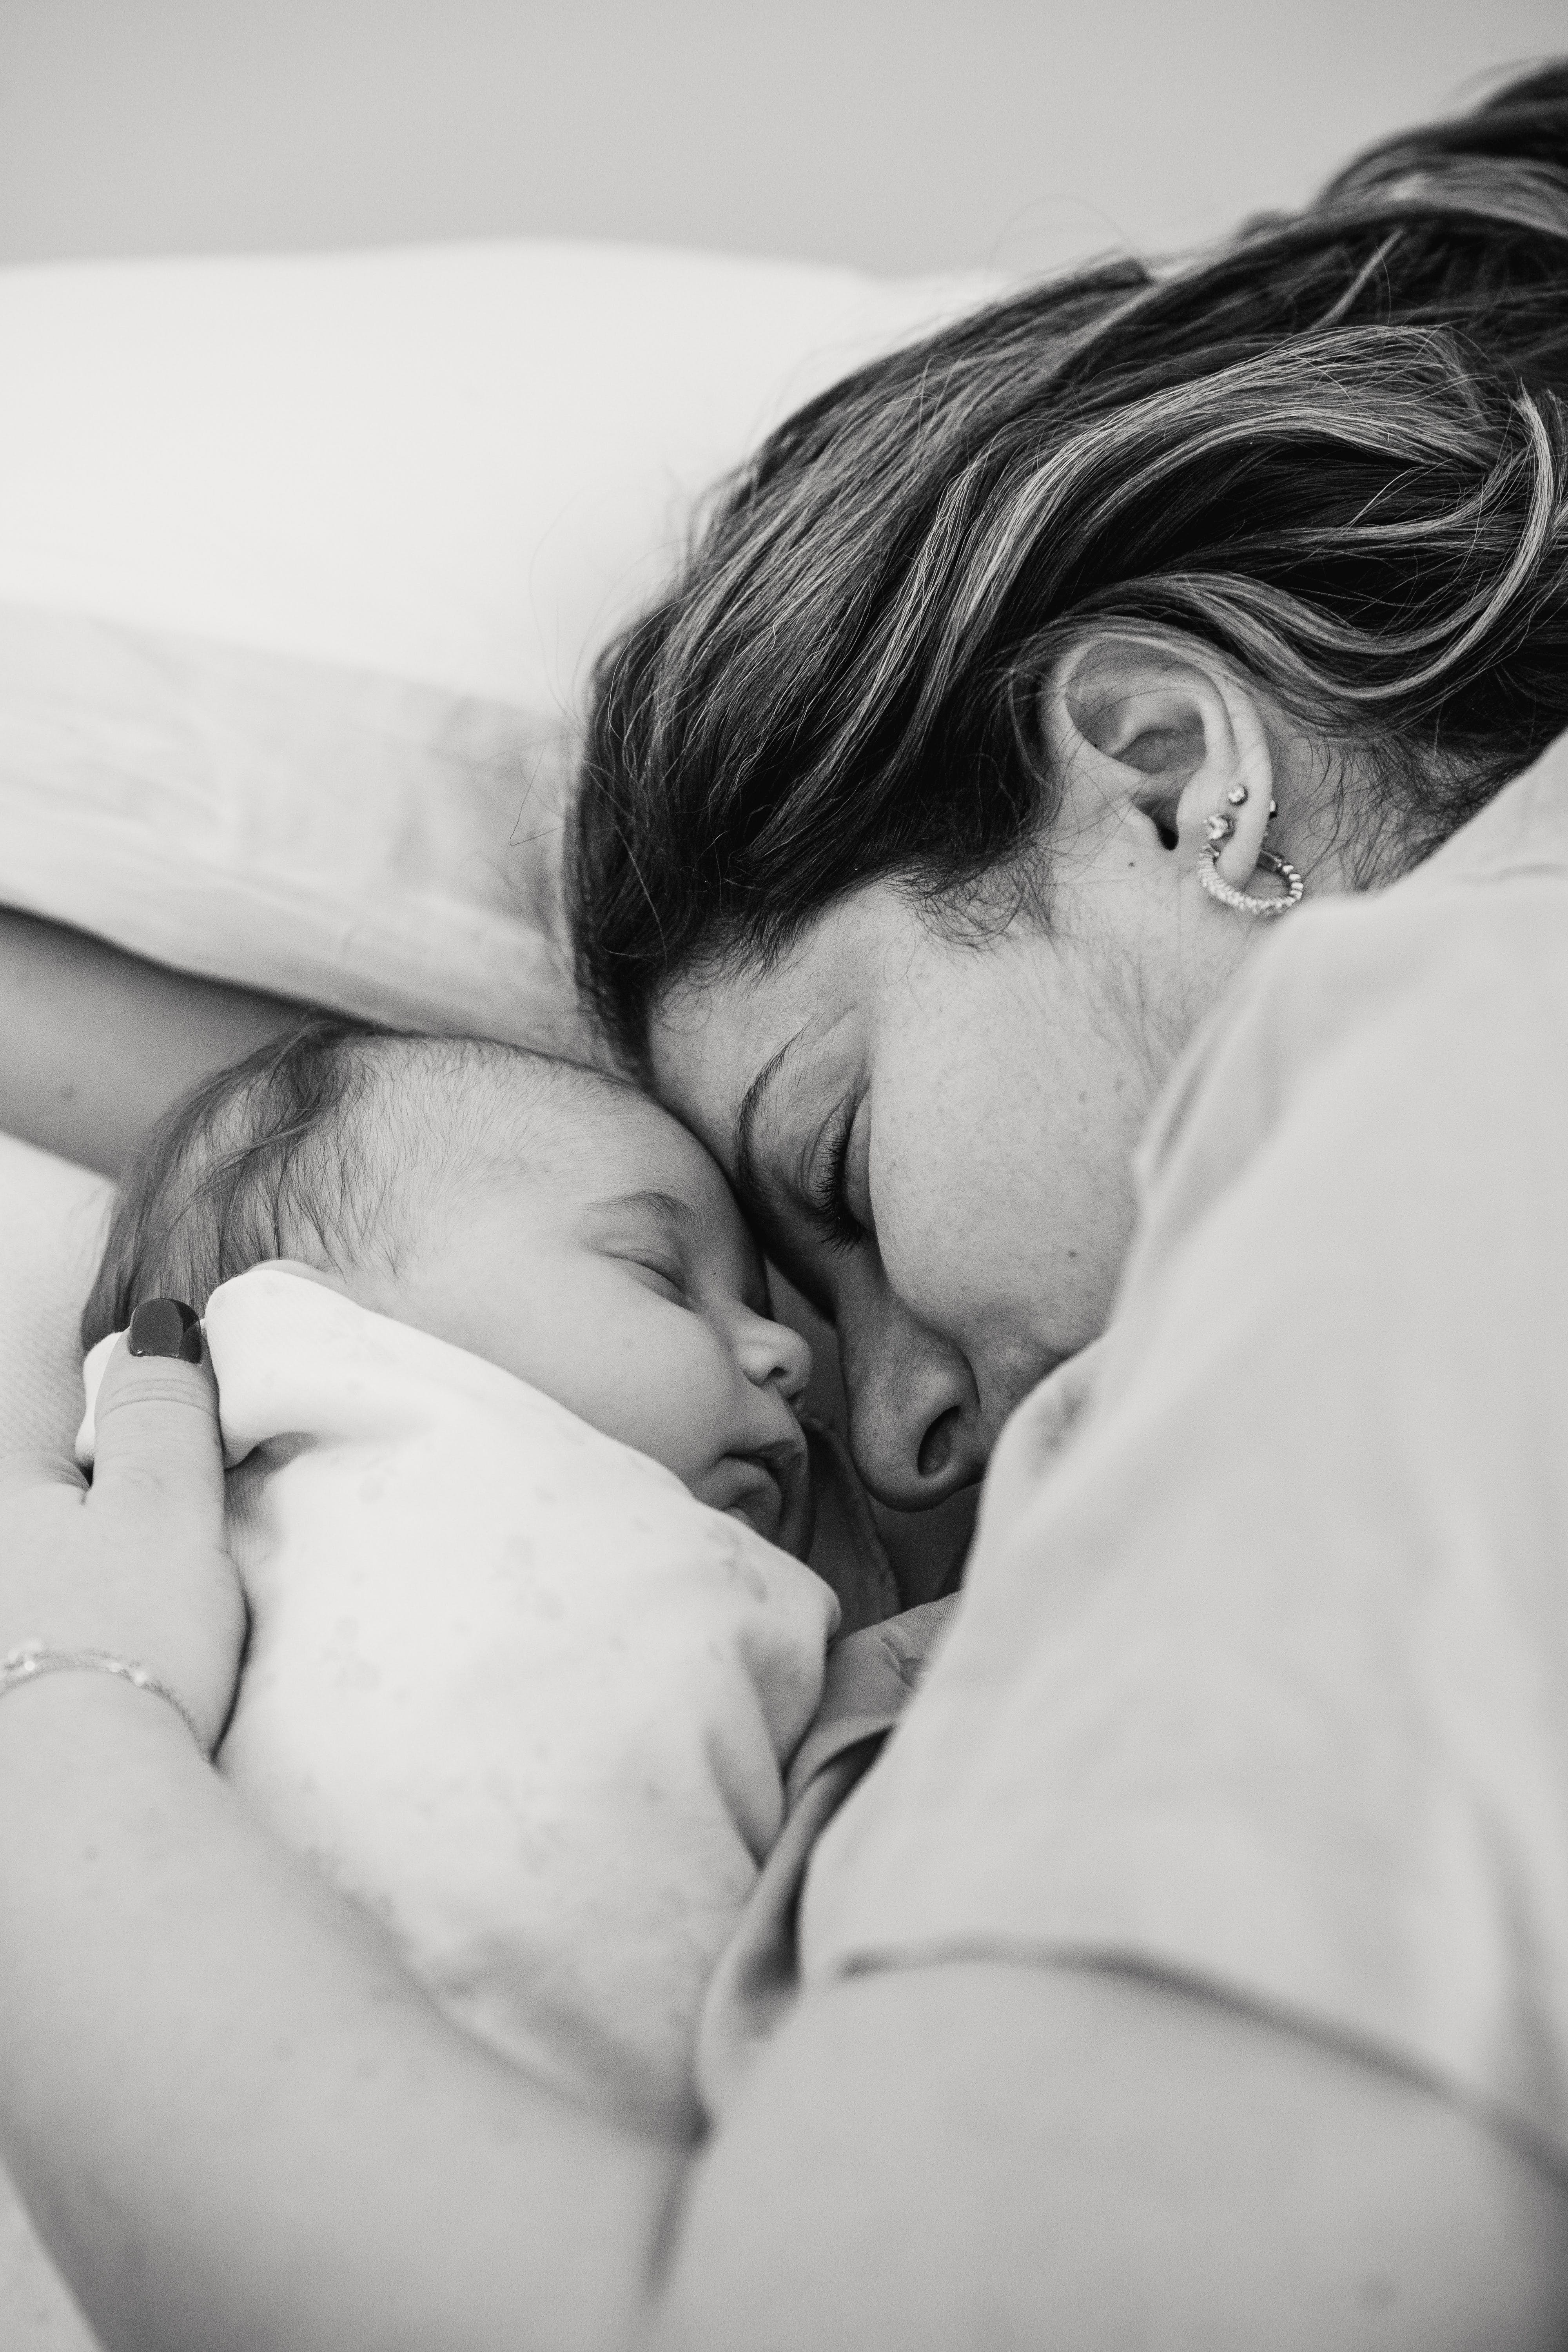 Une mère allongée avec son nouveau-né | Source : Pexels